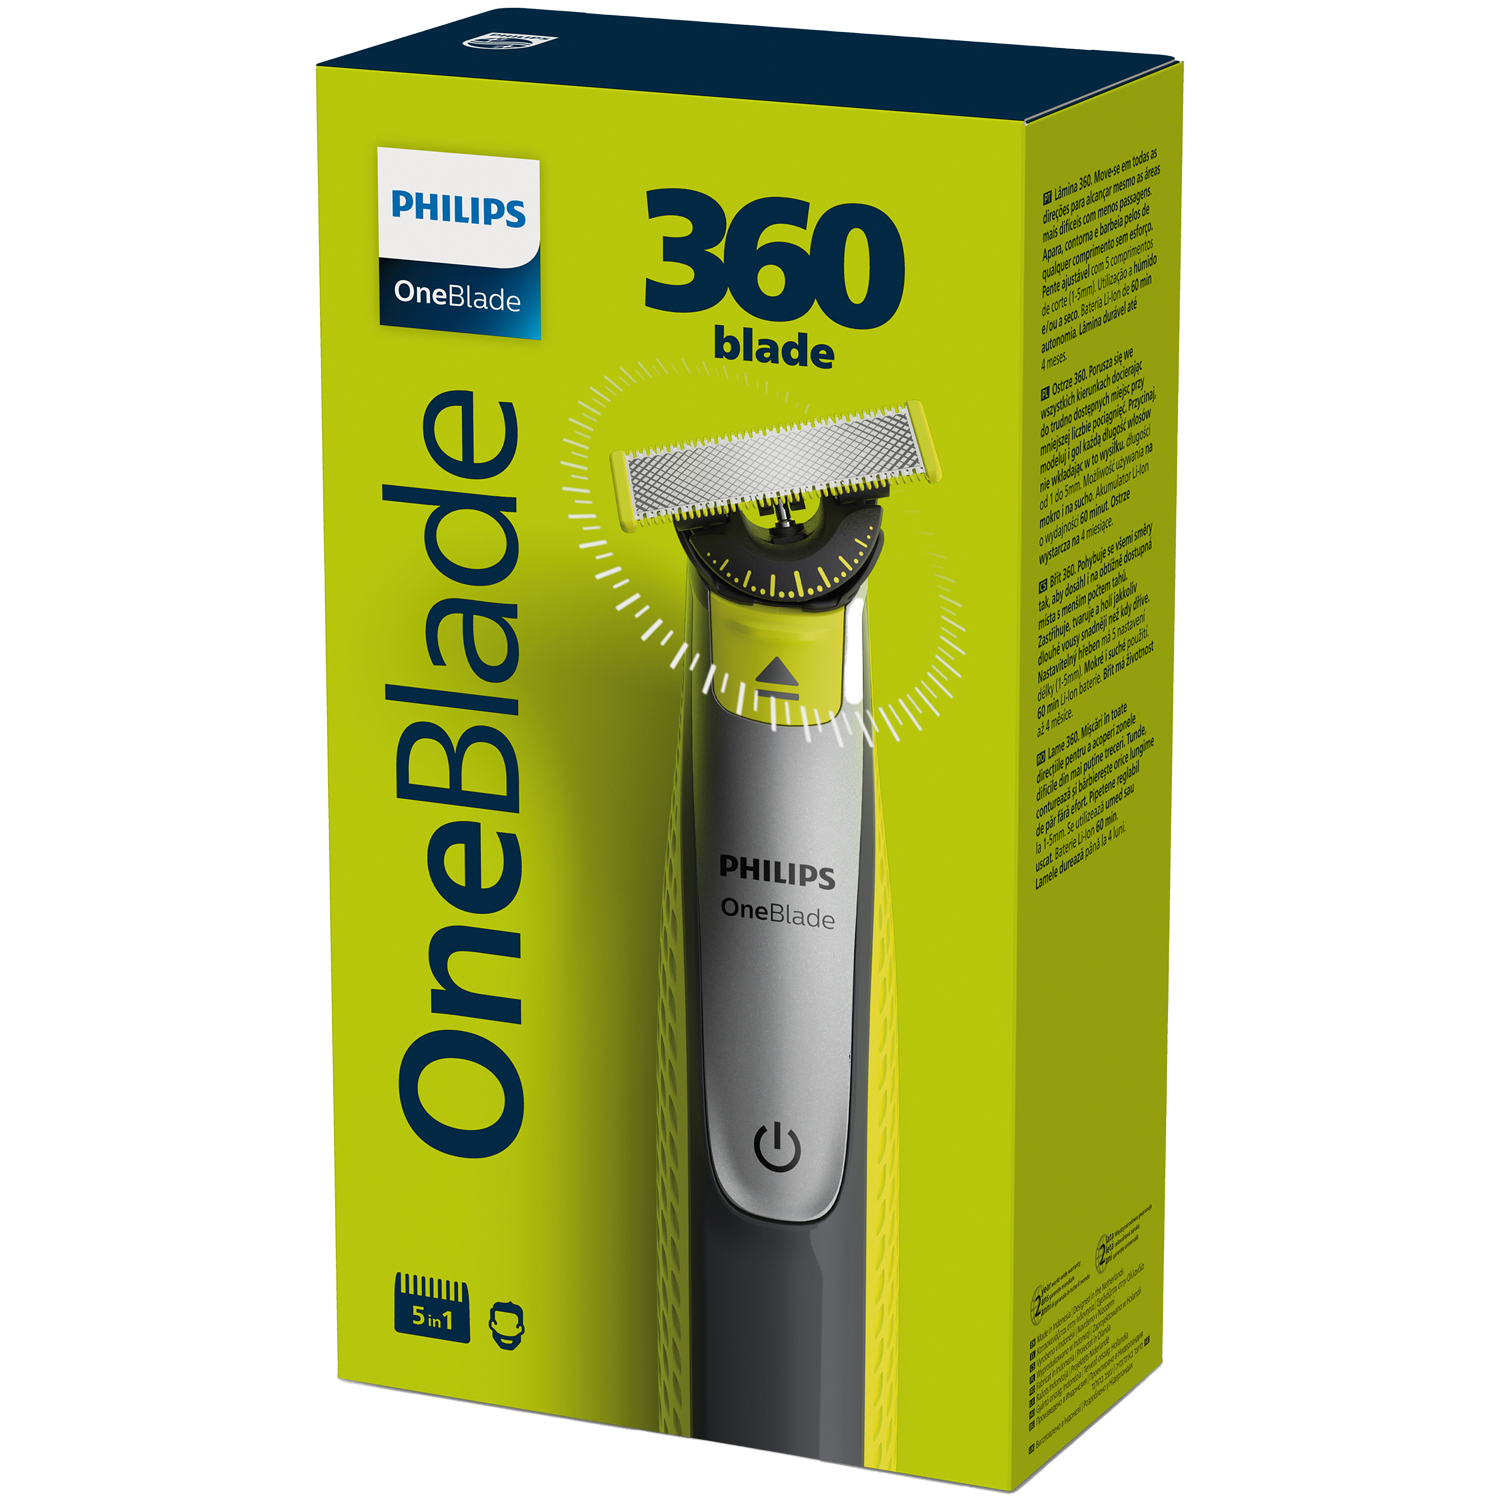 Philips Oneblade 360 QP2730/20 гибридная бритва для лица и тела, 1 комплект бритва oneblade 360 qp2730 20 philips